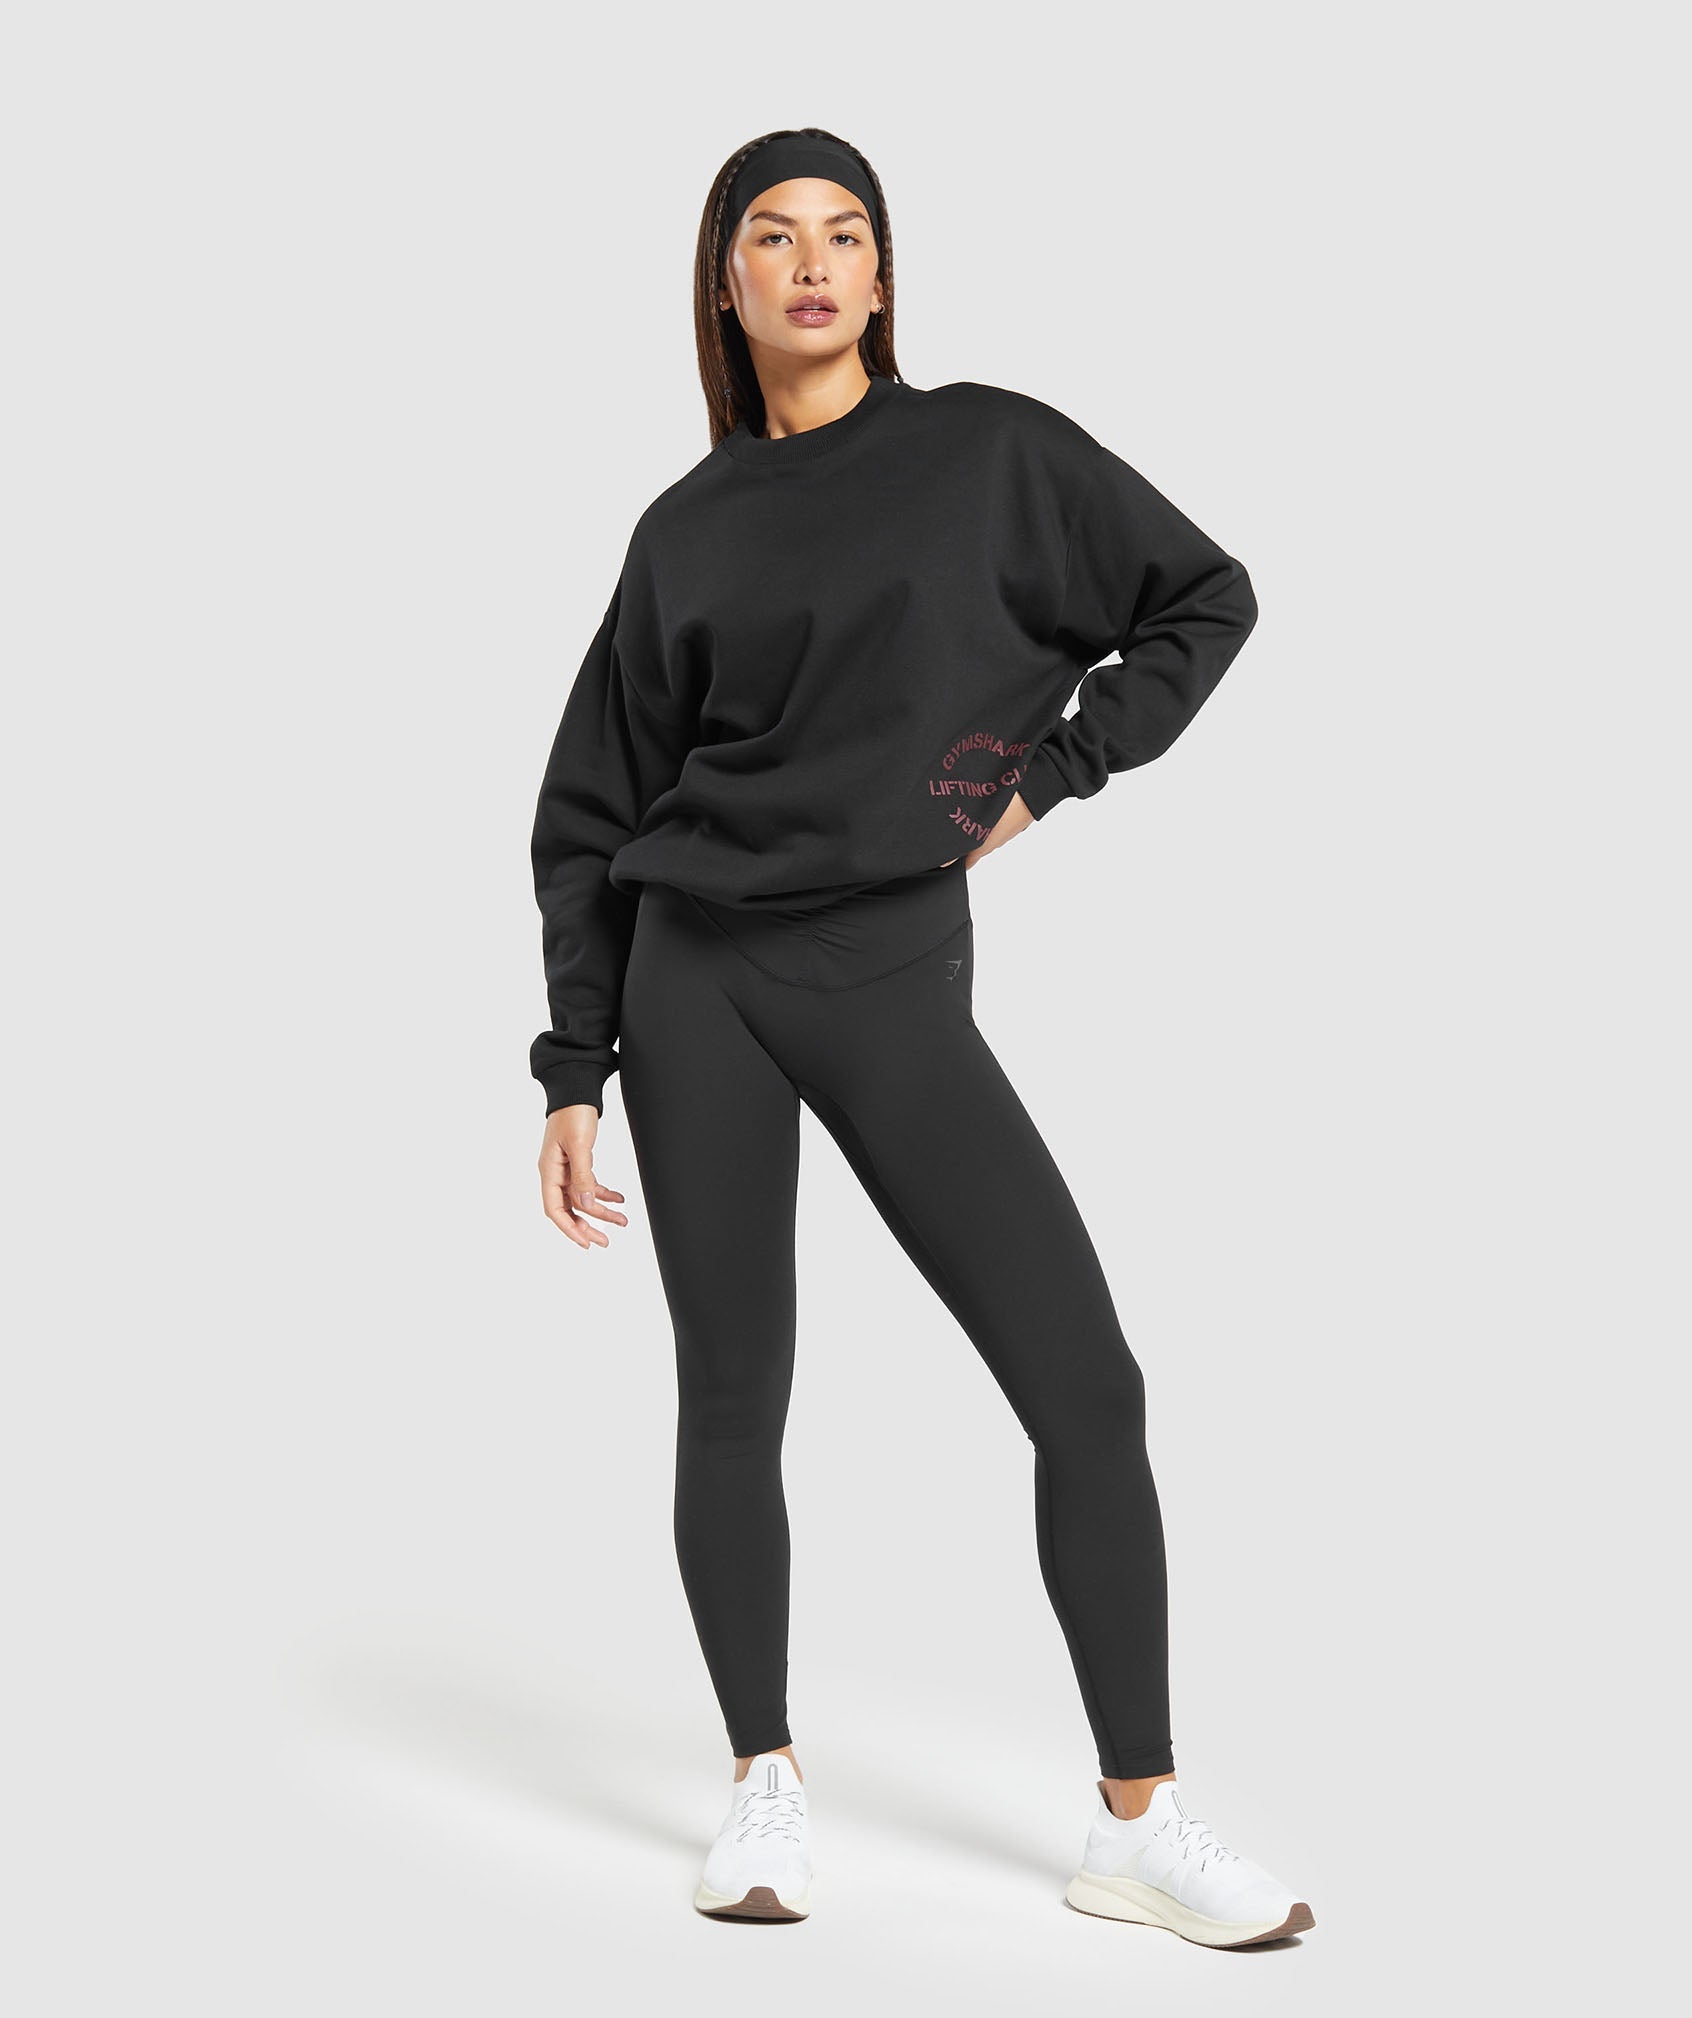 Women's Oversized Sweatshirts - Gymshark